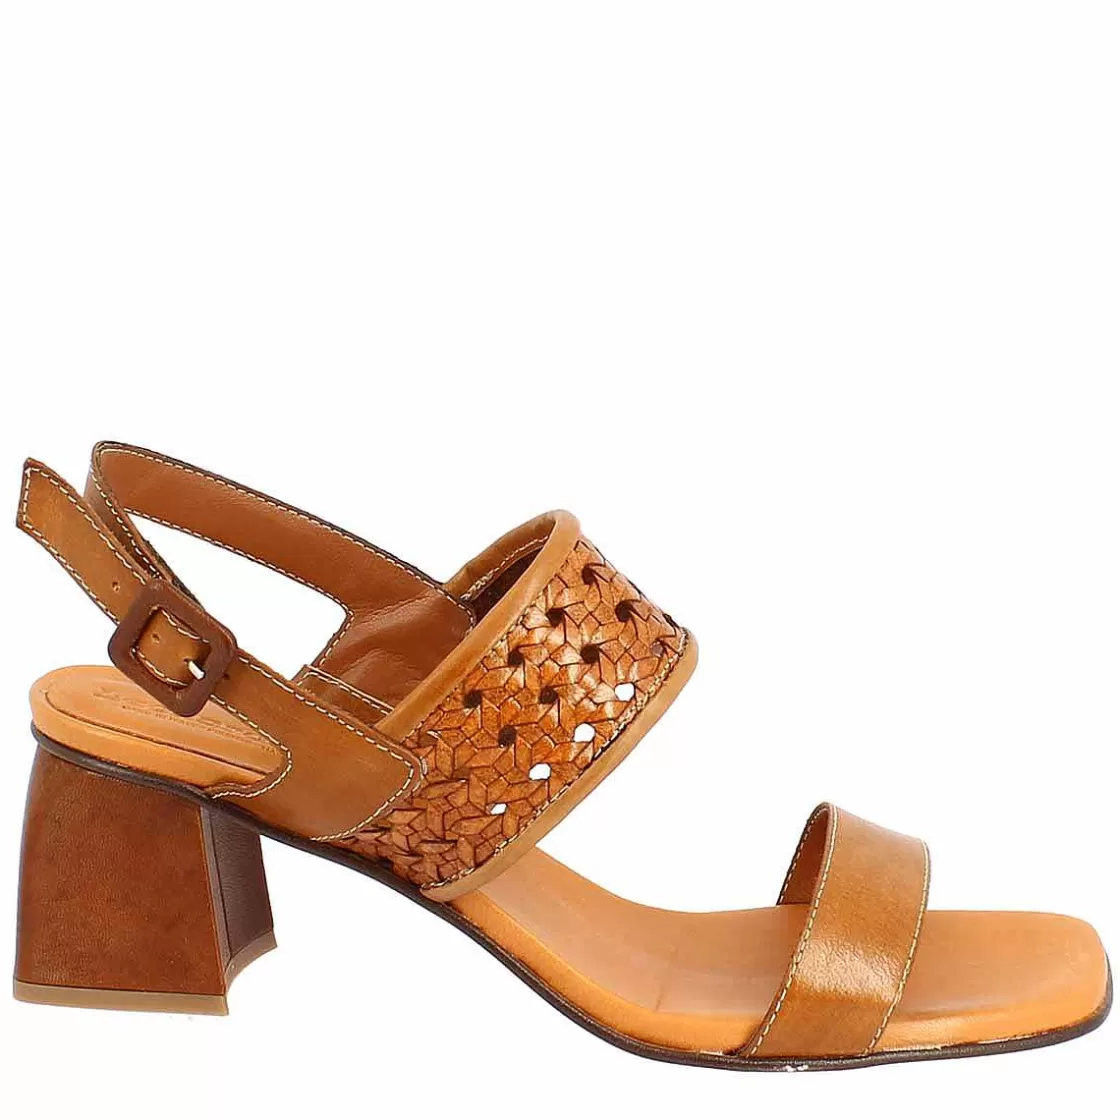 Leonardo Handmade Women'S Slingback Sandals In Brown Leather. New